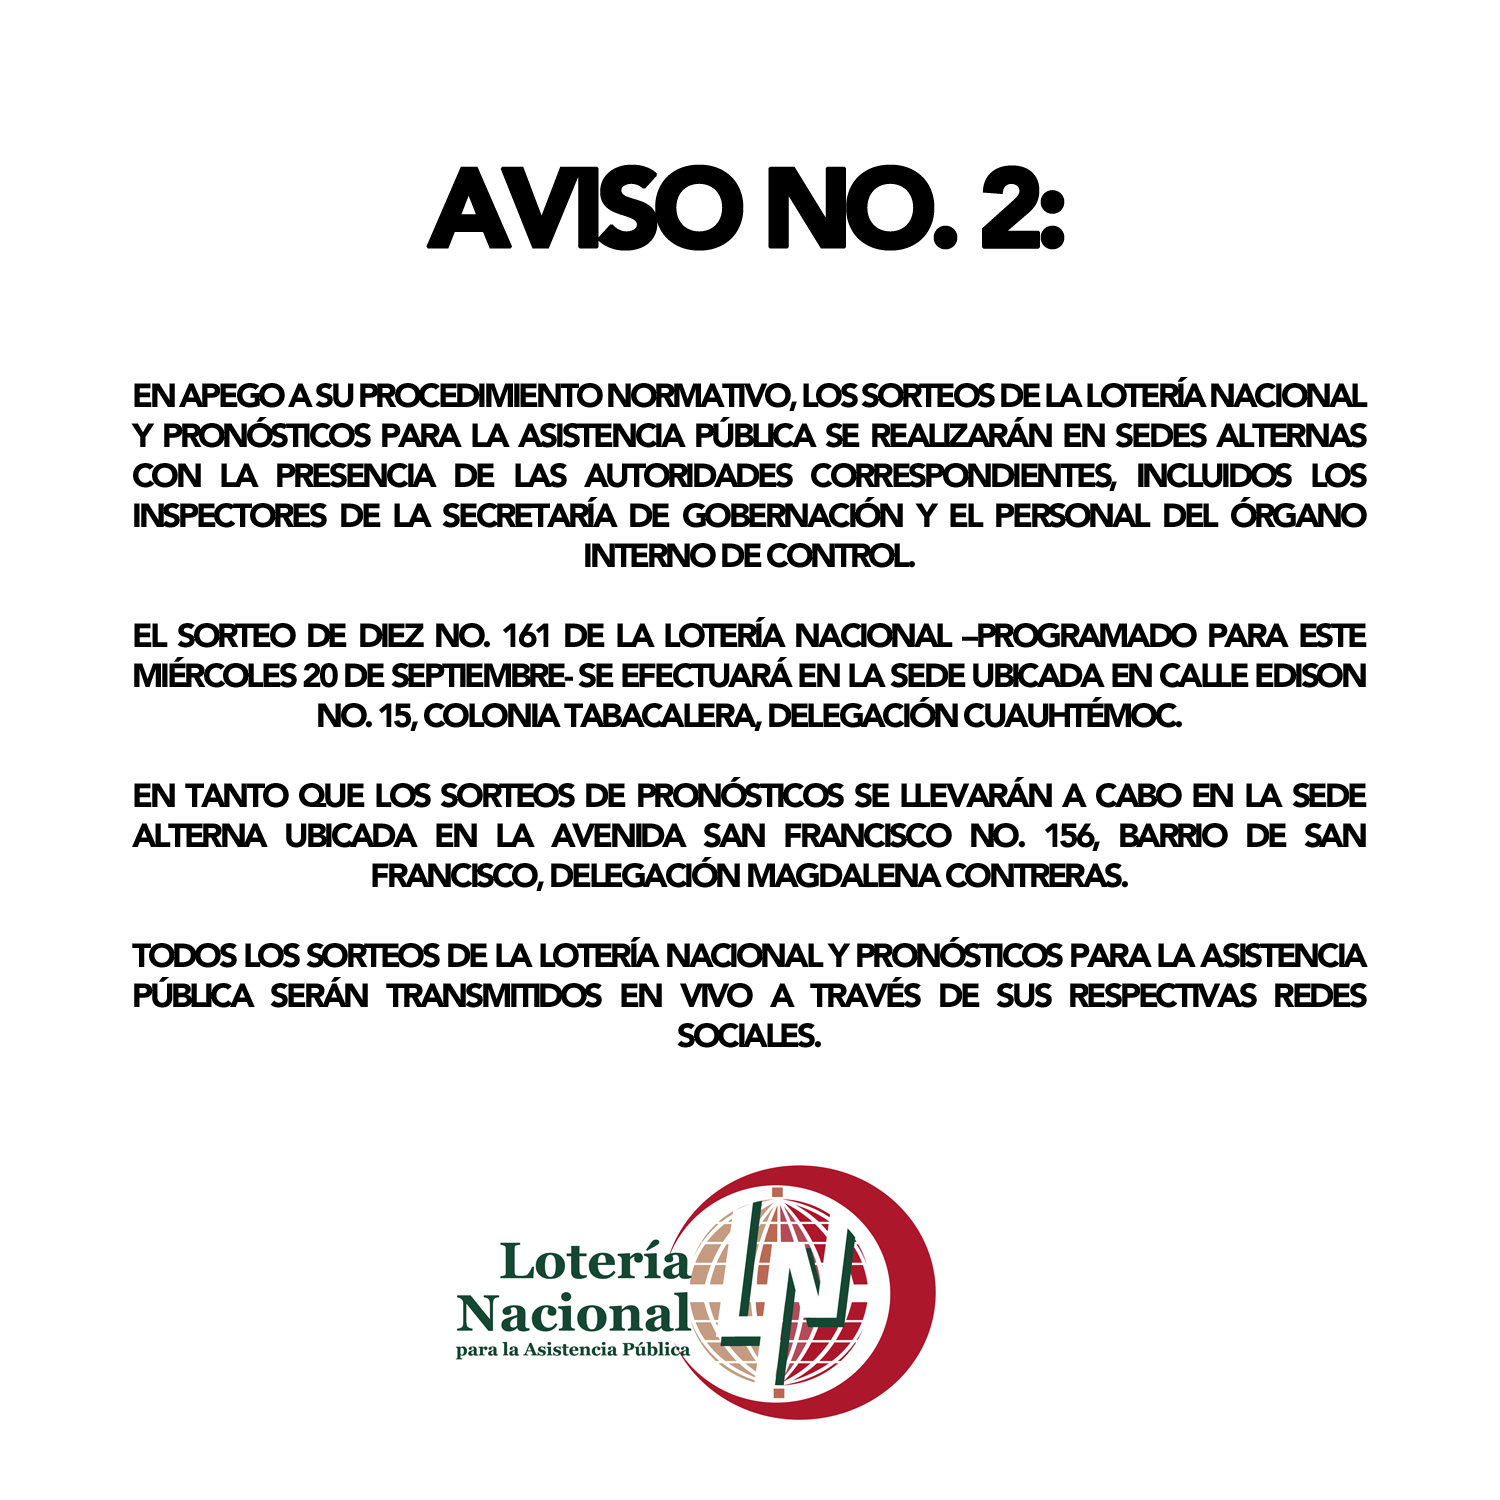 El Sorteo de Diez No. 161 de la Lotería Nacional –programado para este miércoles 20 de septiembre- se efectuará en la sede ubicada en Calle Edison No. 15, Colonia Tabacalera, Delegación Cuauhtémoc.

